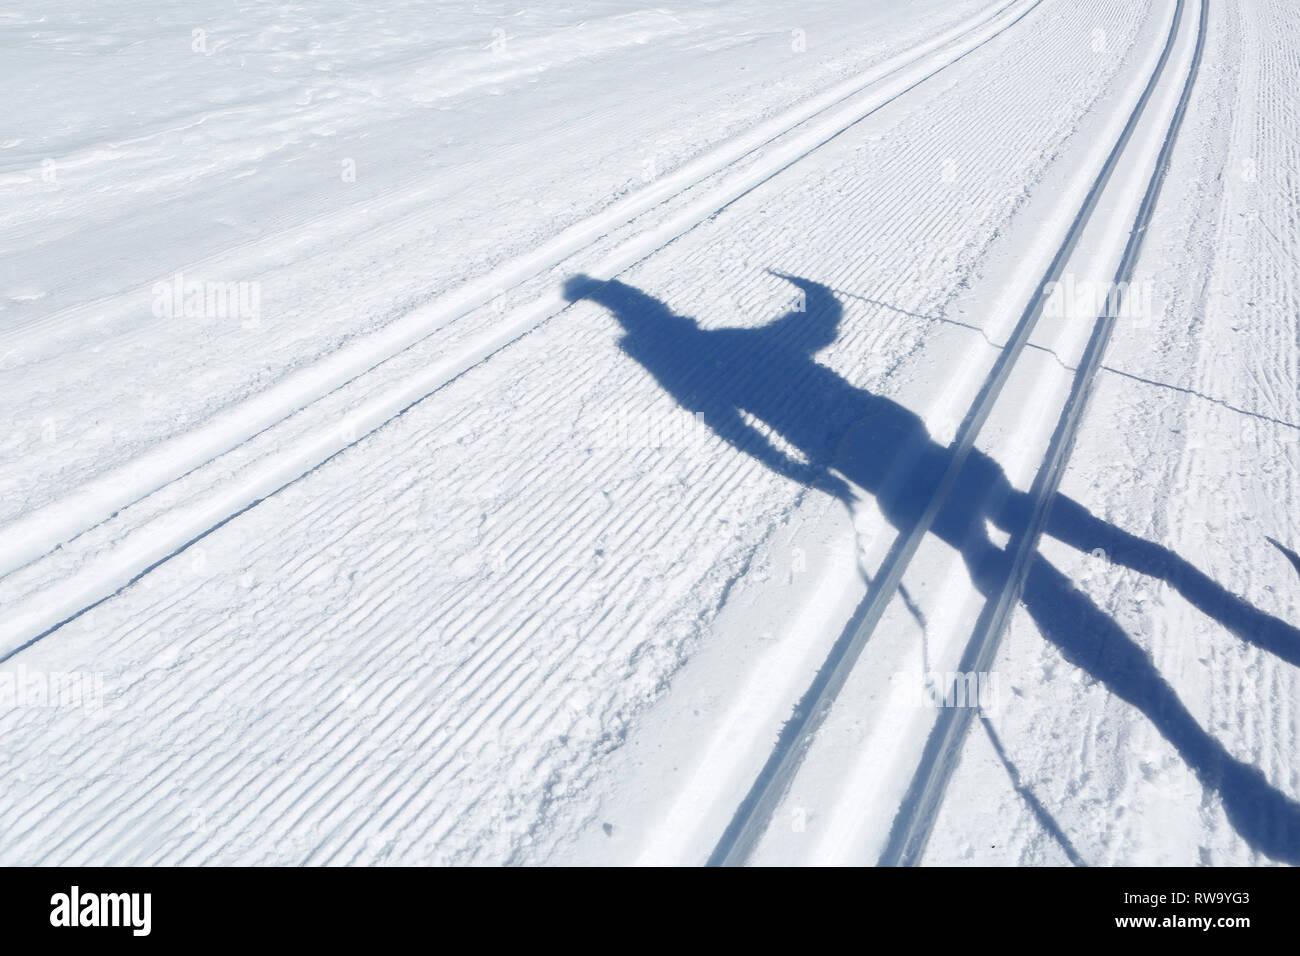 La sombra de un hombre en una pista de esquí cross-country, San Martino di Castrozza, Trento, Italia, Europa Foto de stock